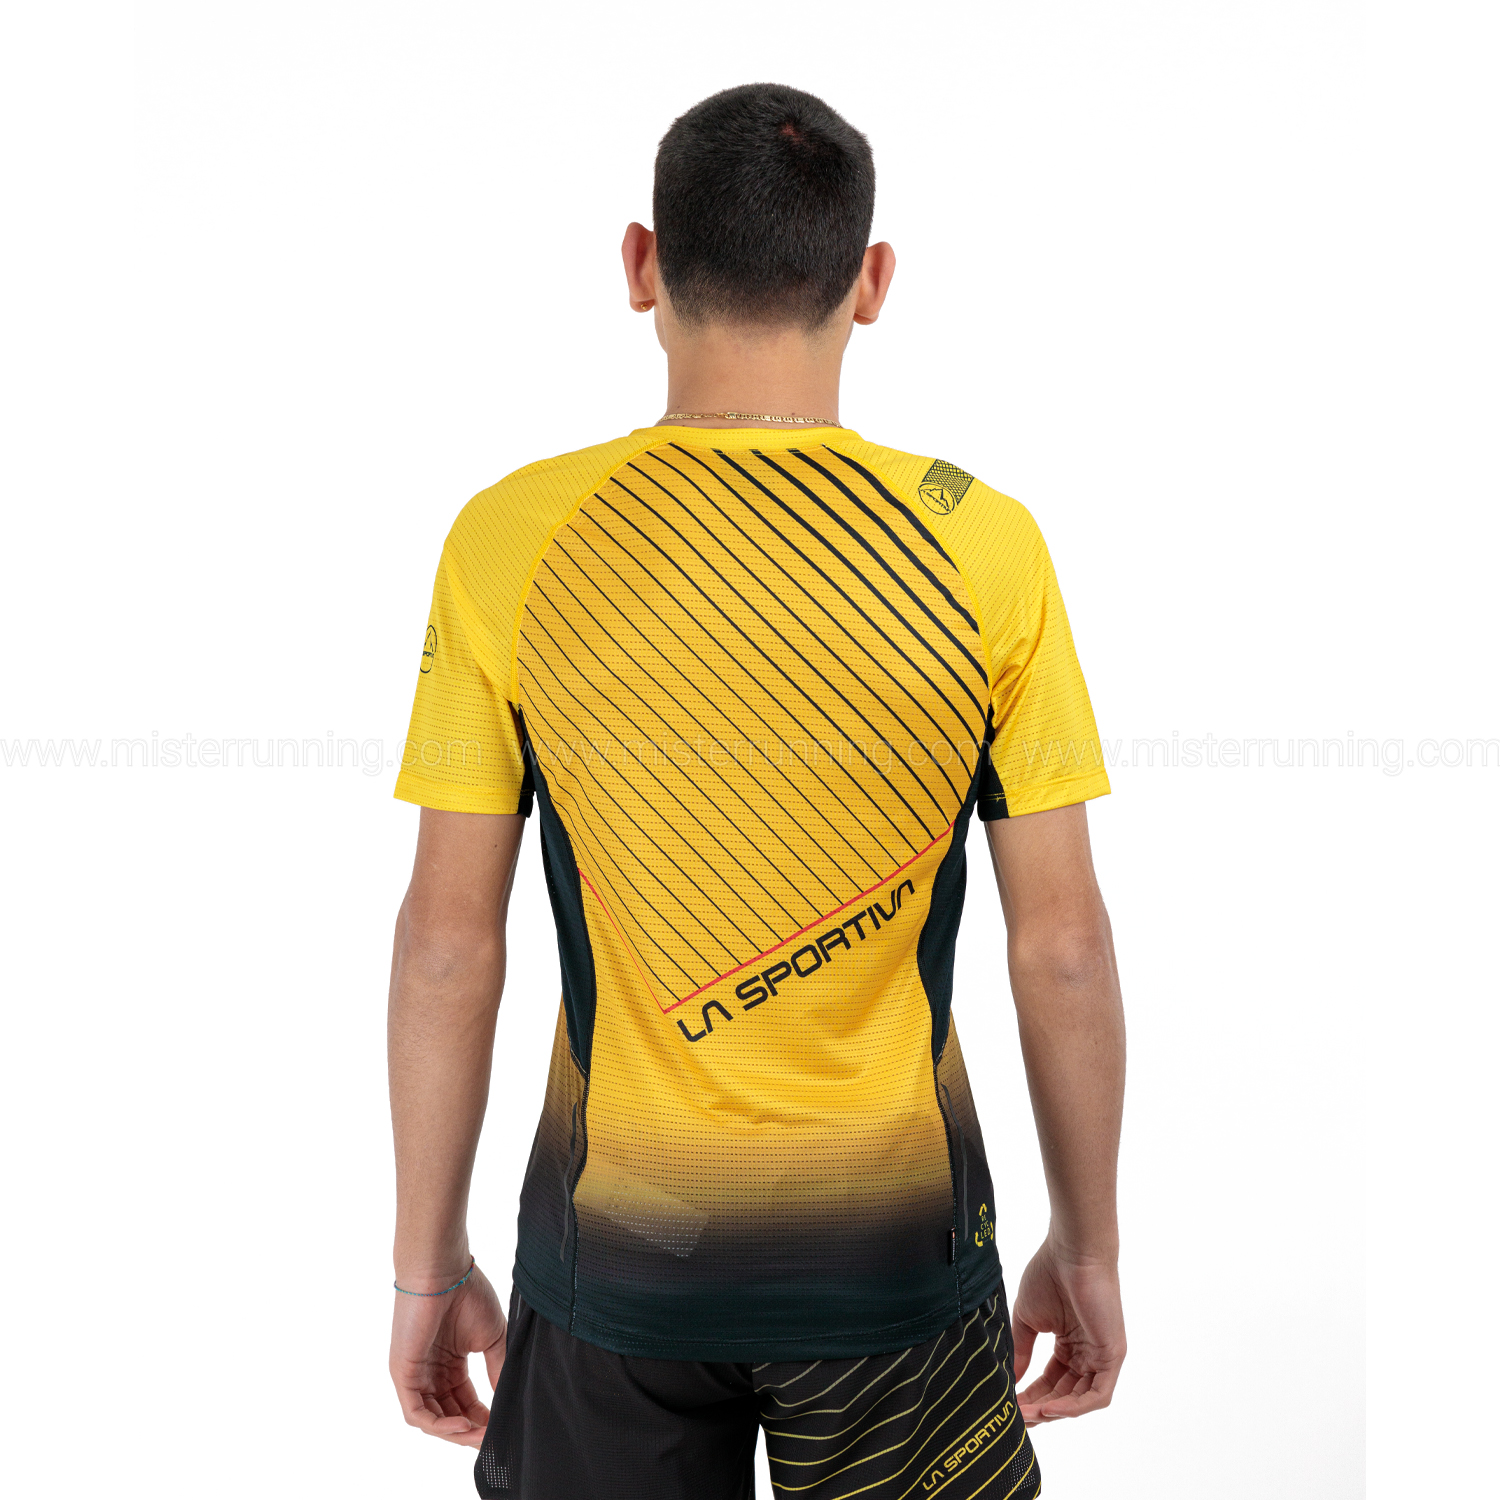 La Sportiva Wave Maglietta - Yellow/Black